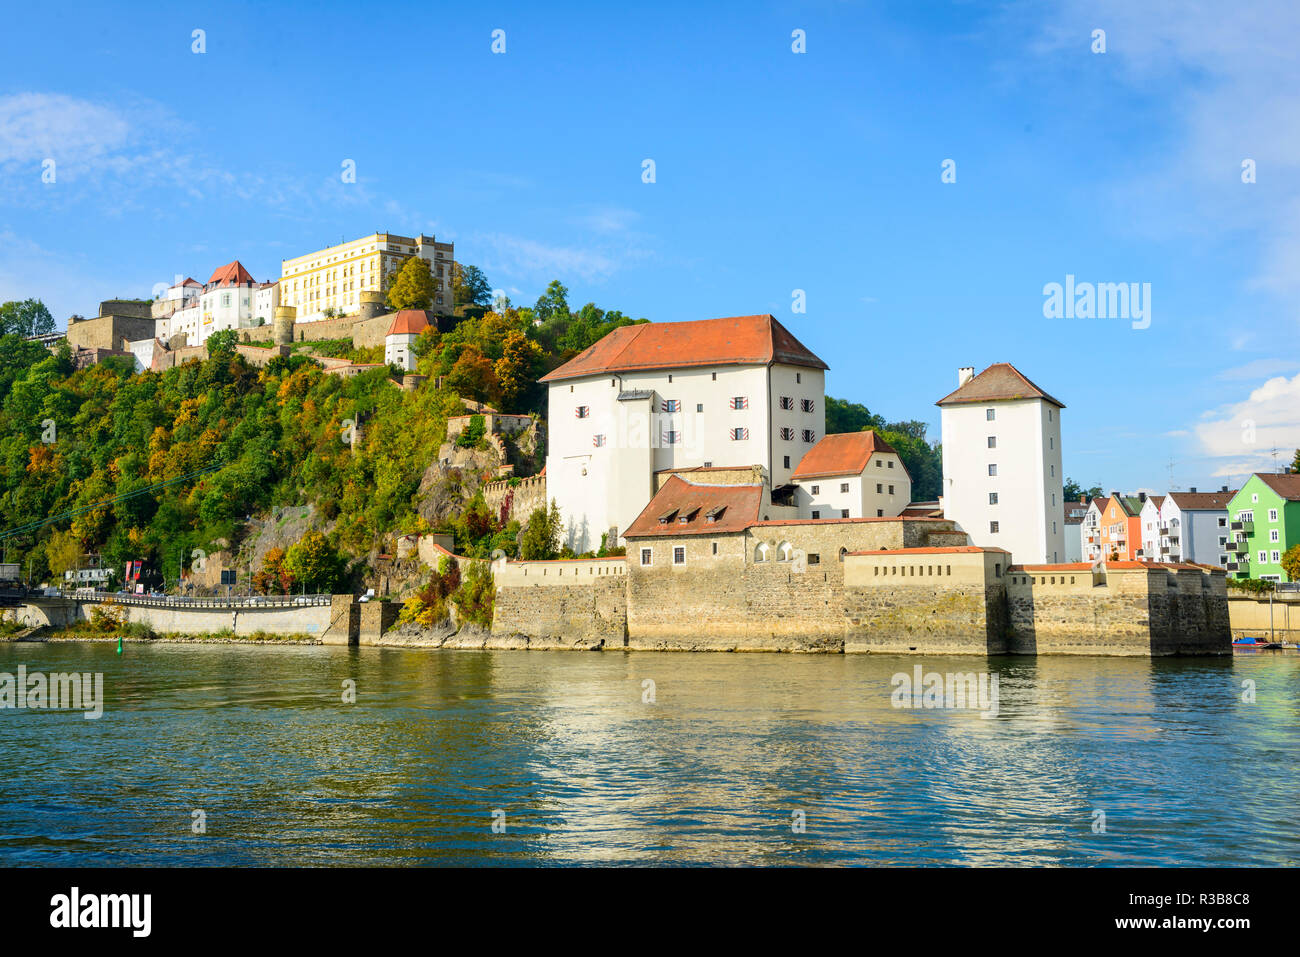 Castle Veste Upper House and Lower House, Danube, Passau, Lower Bavaria, Bavaria Stock Photo